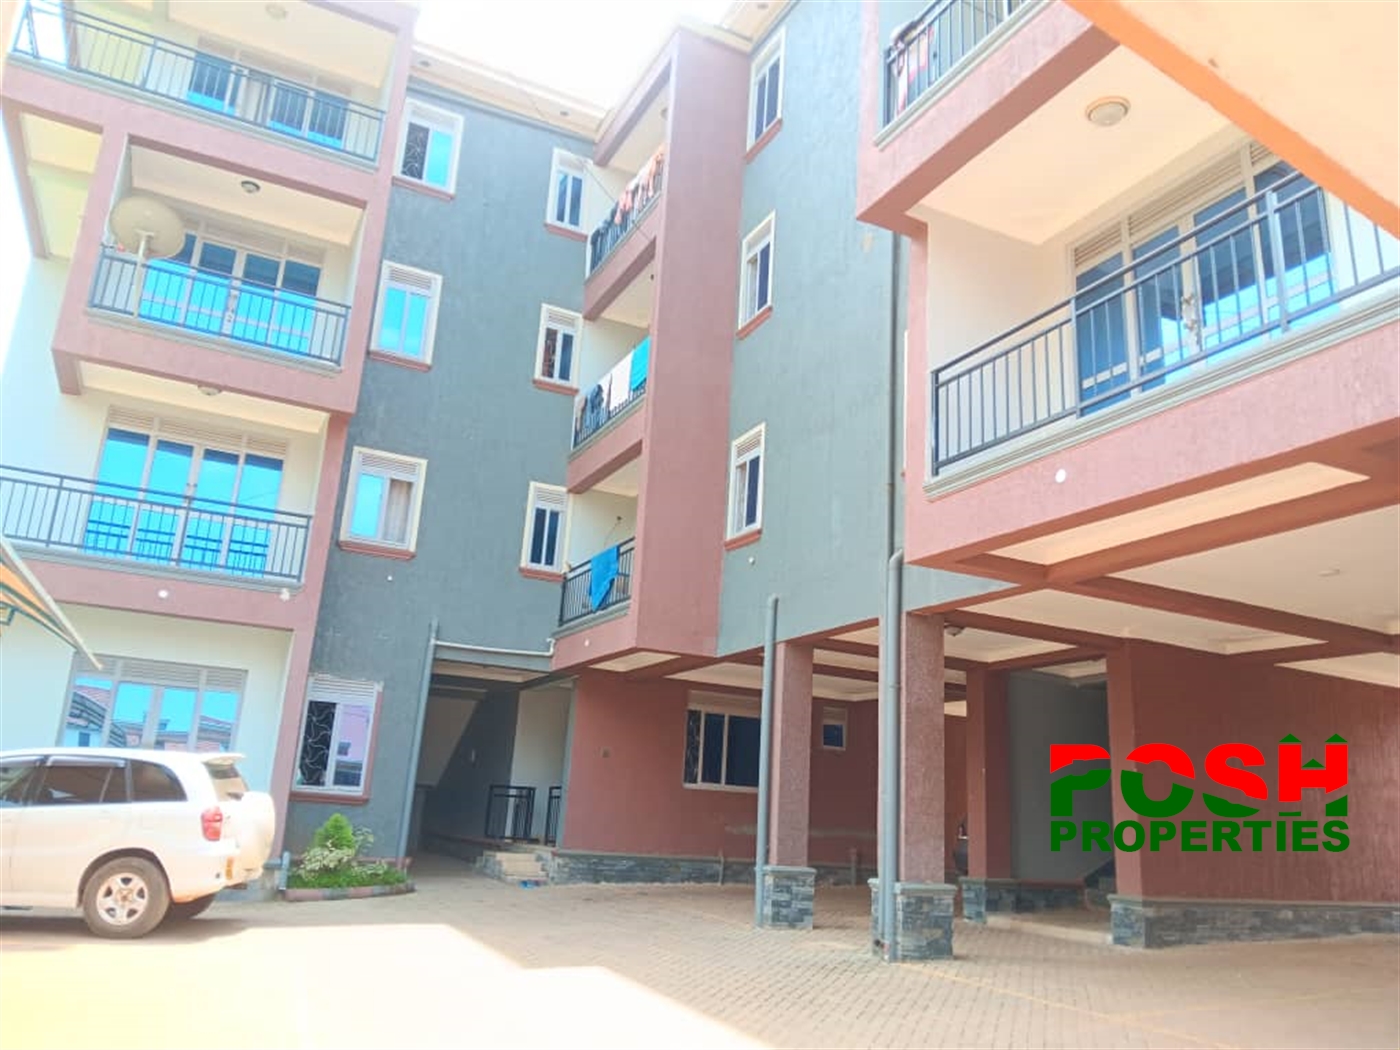 Apartment block for sale in Kyaliwajjala Kampala